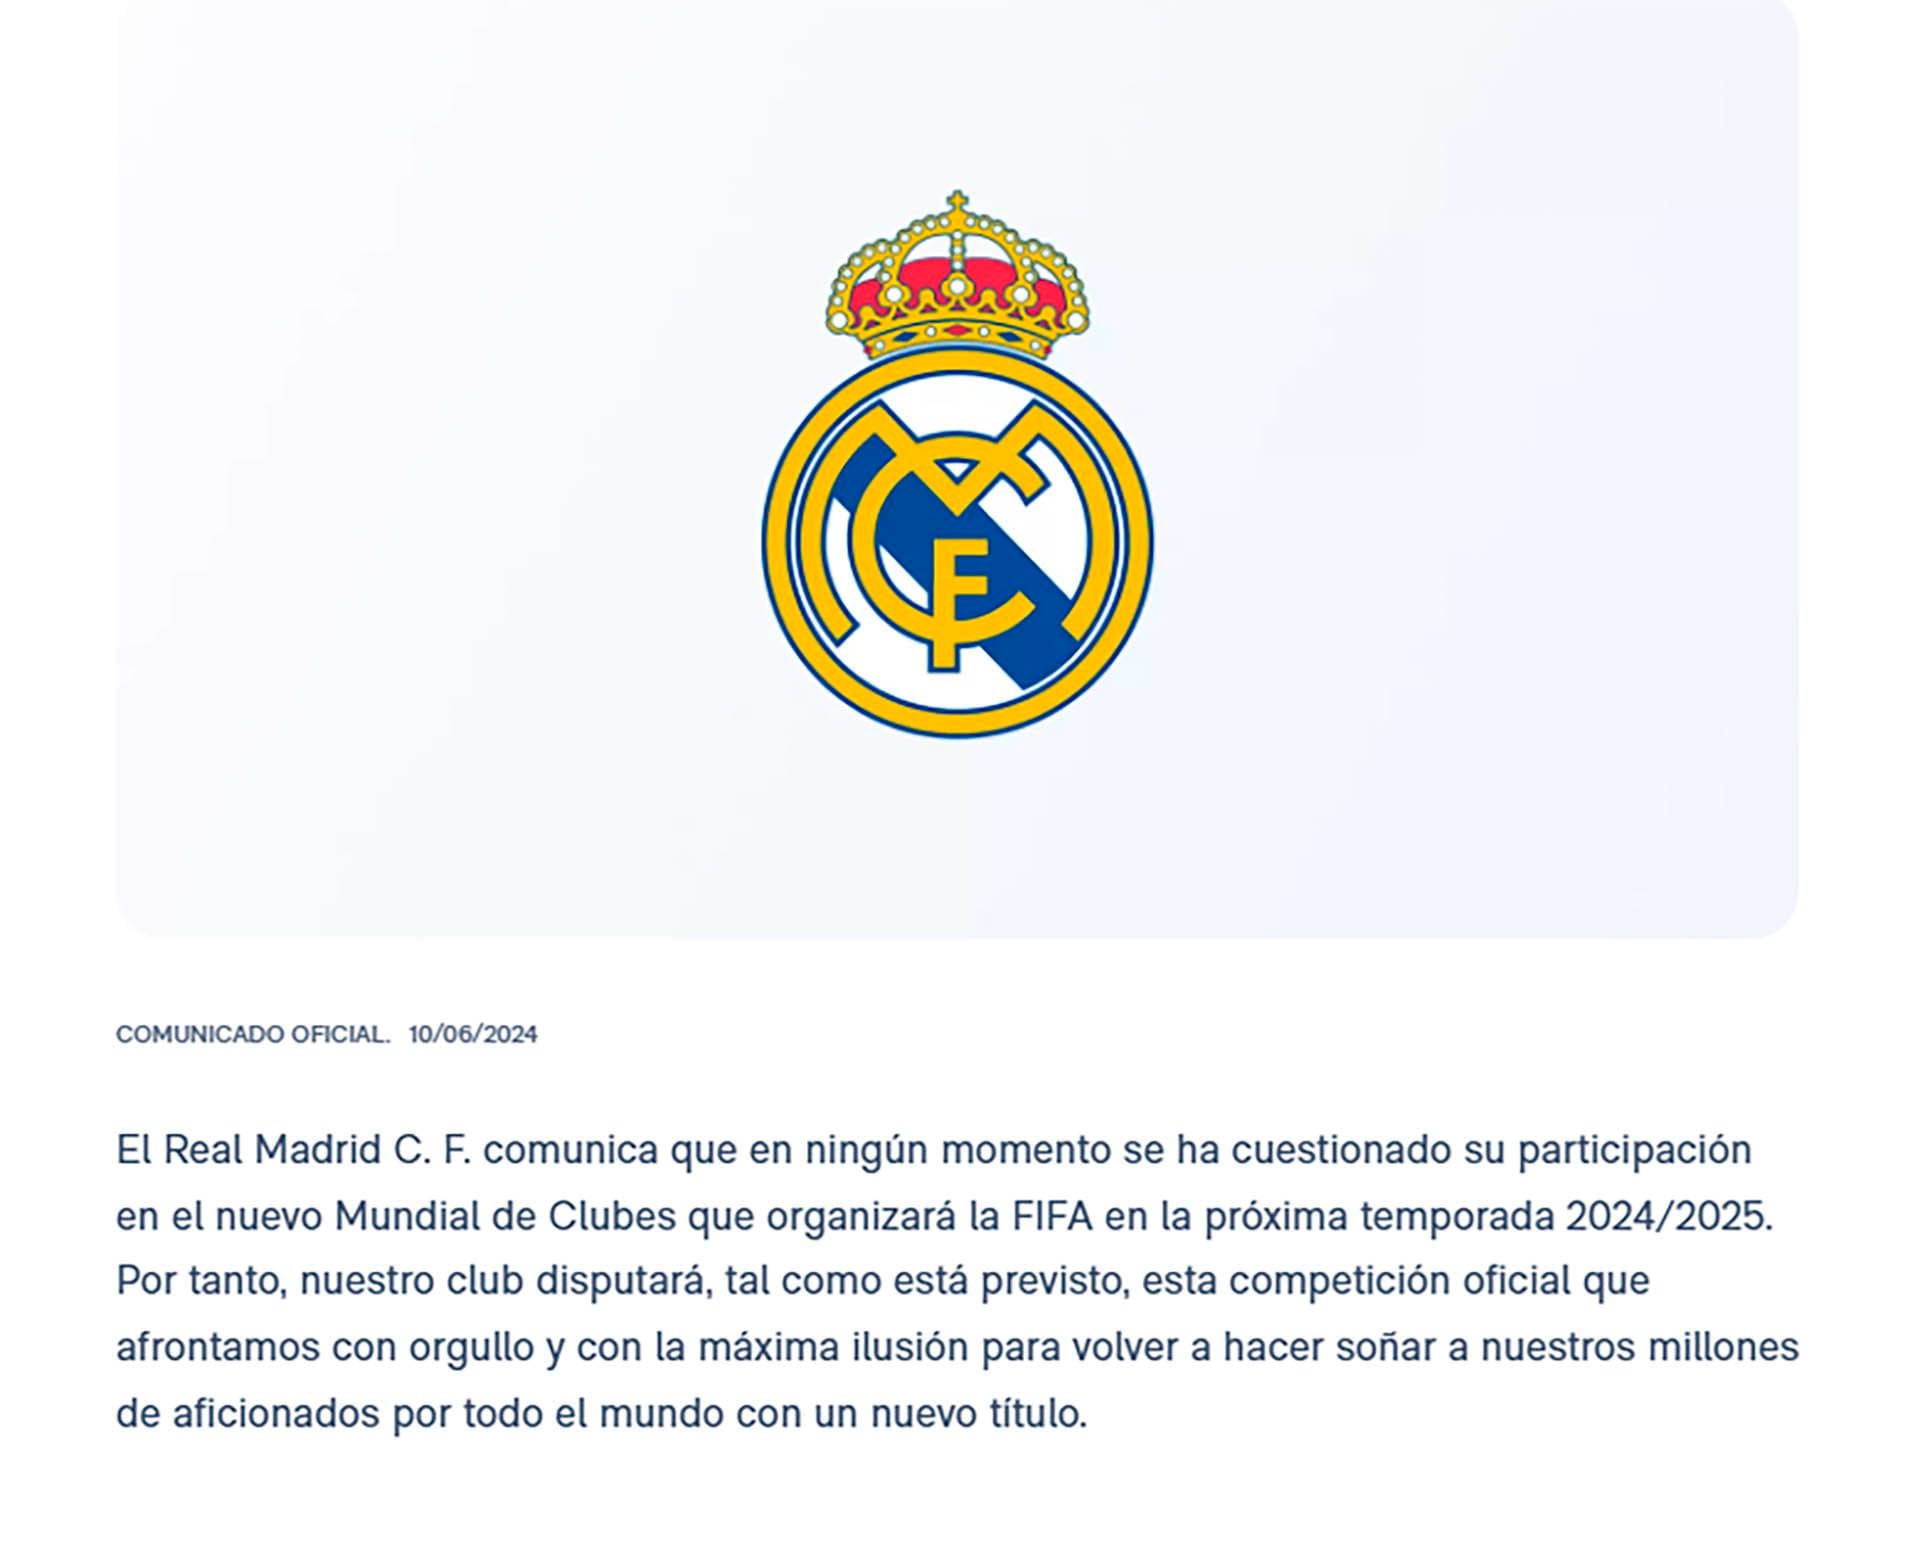 Ancelotti y Real Madrid desmienten la información